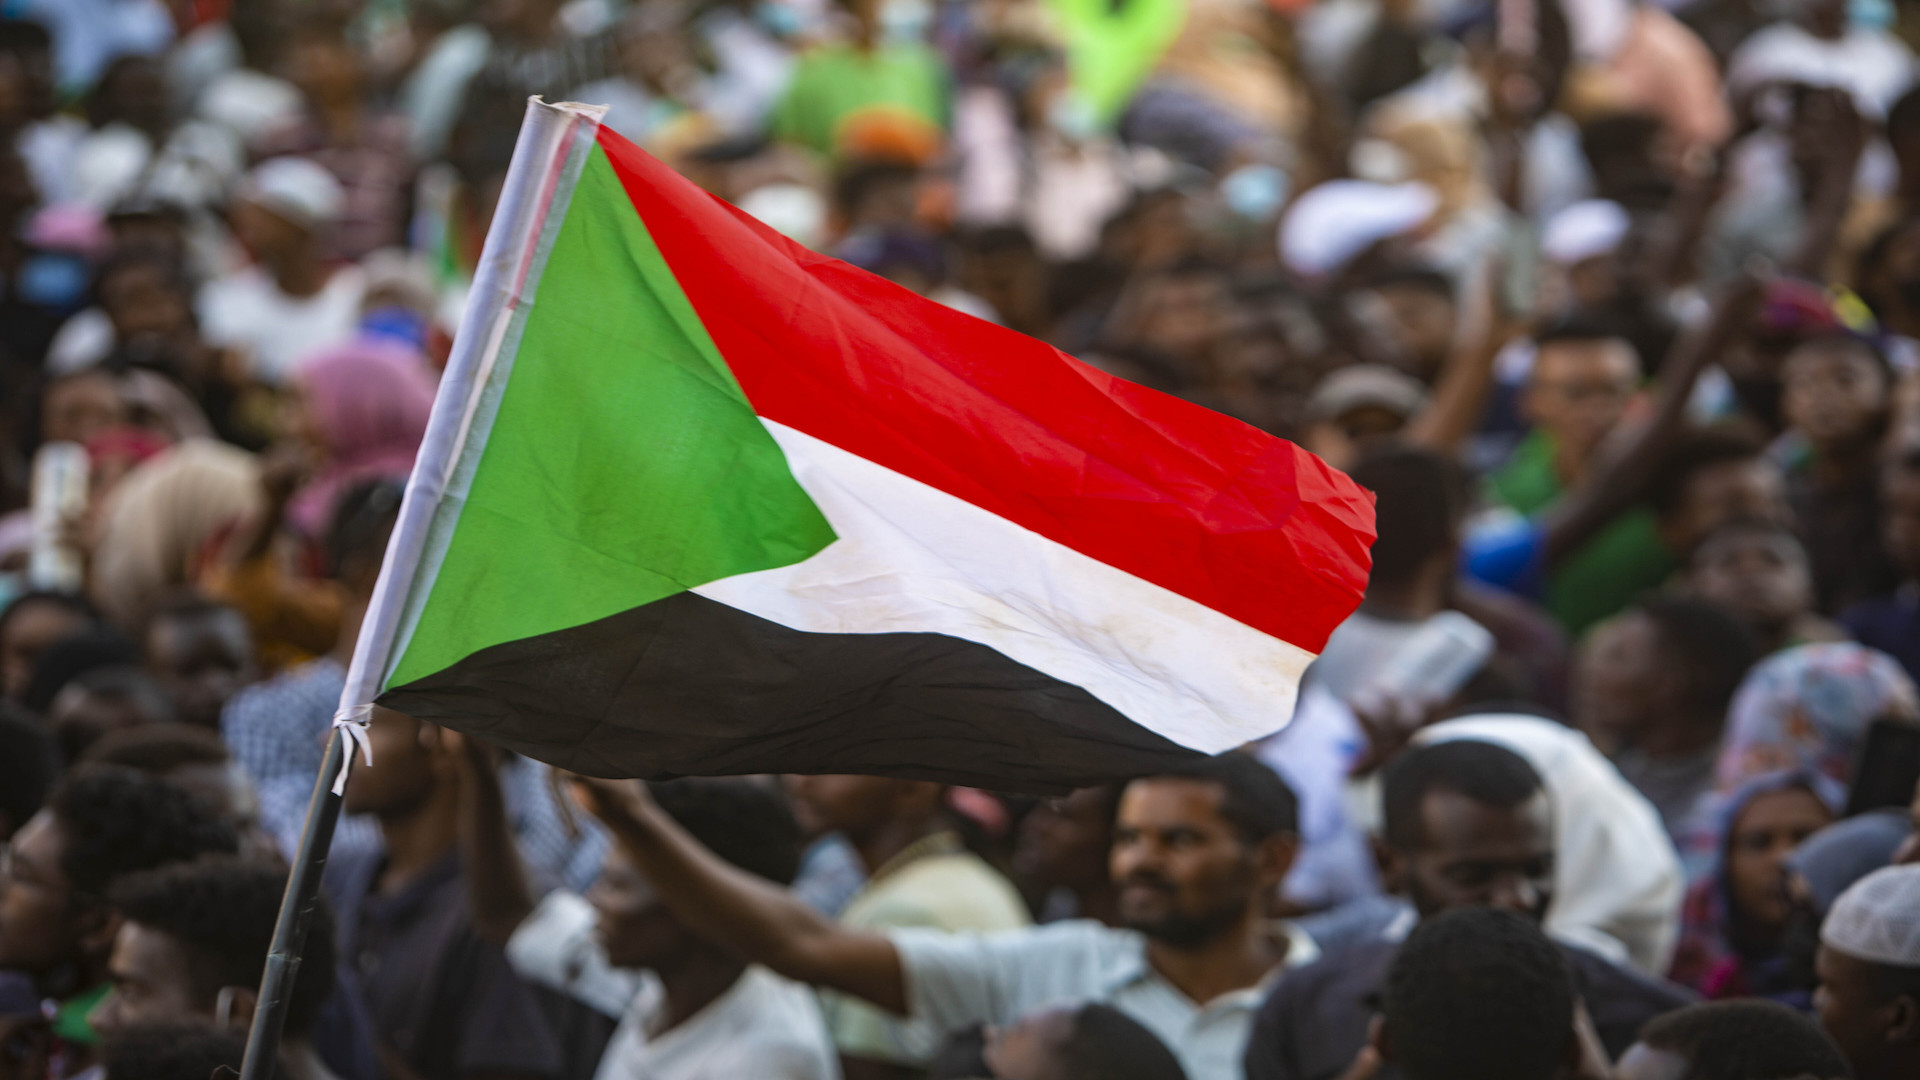 اتفاق بين الجيش السوداني ومكونات مدنية.. بنود مُعلنة وأخرى مؤجلة "تُثير القلق"